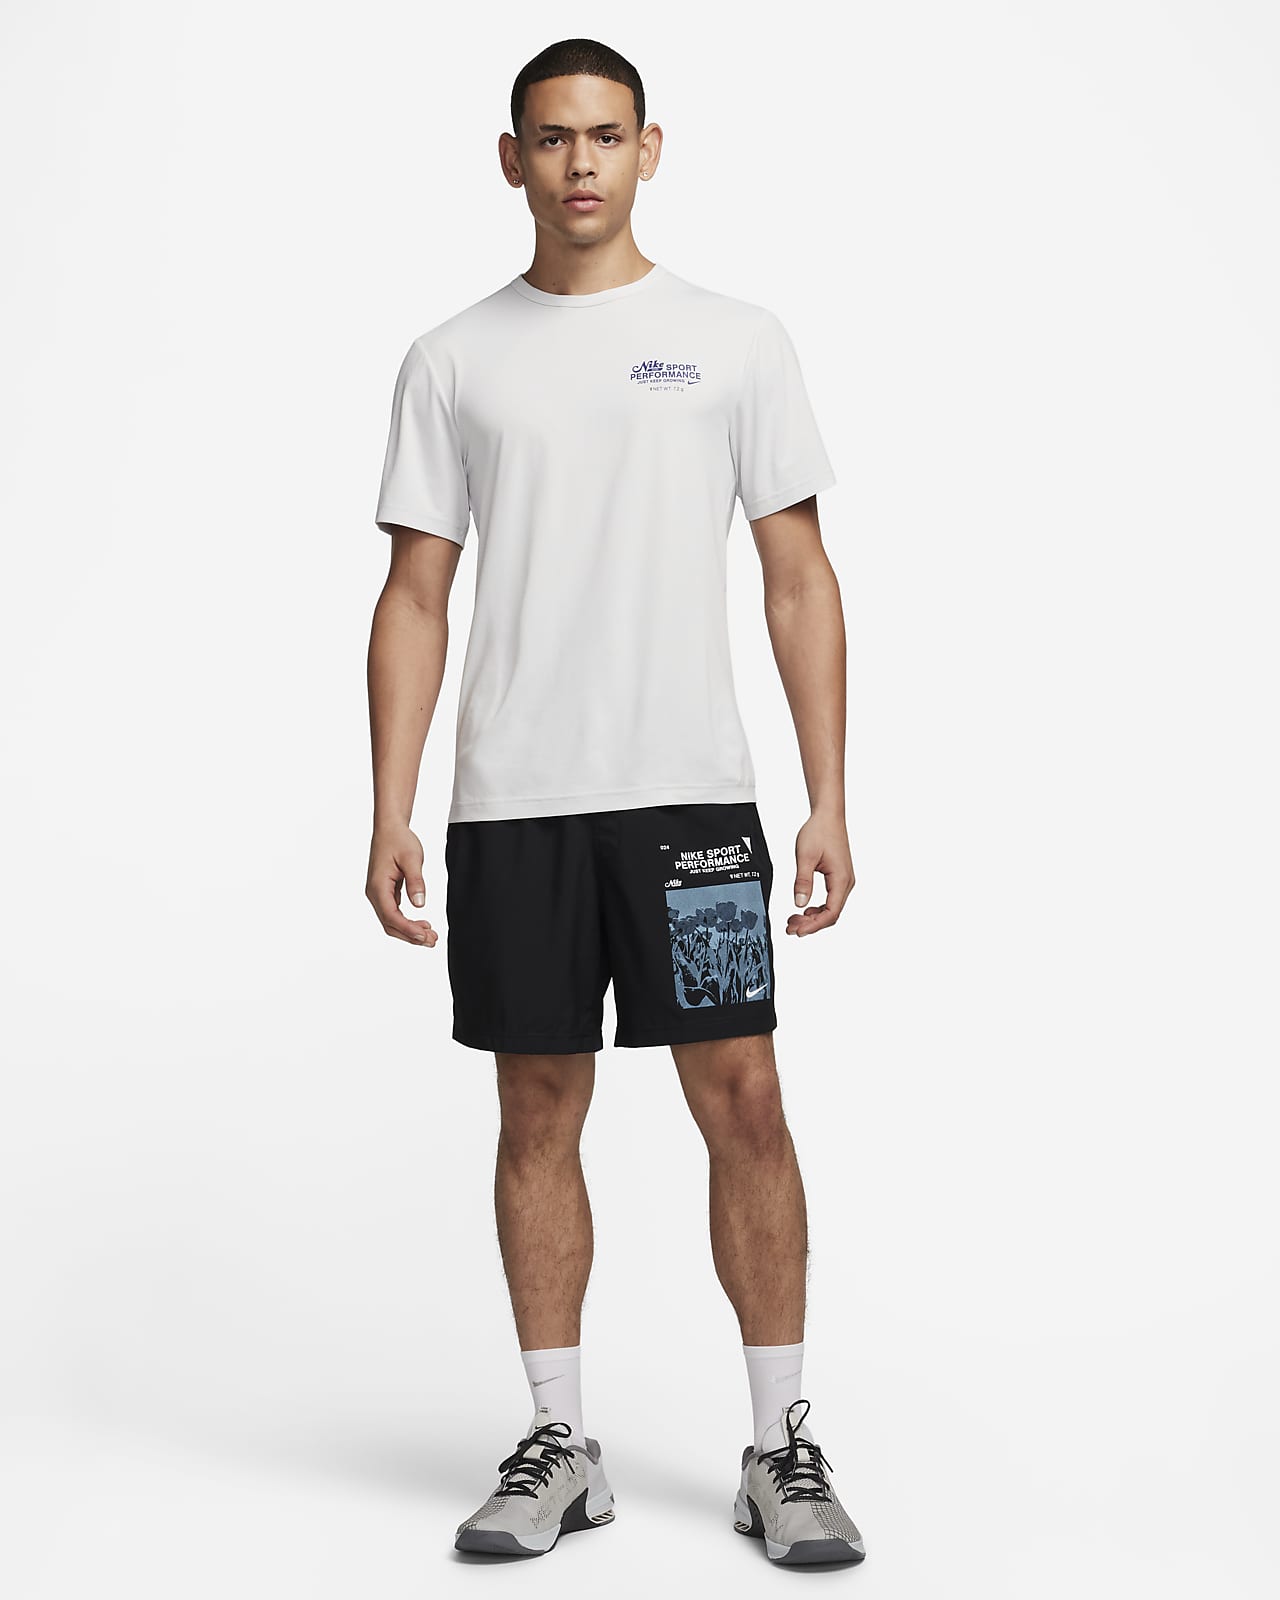 Nike Hyverse - Noir - T-shirt Running Homme